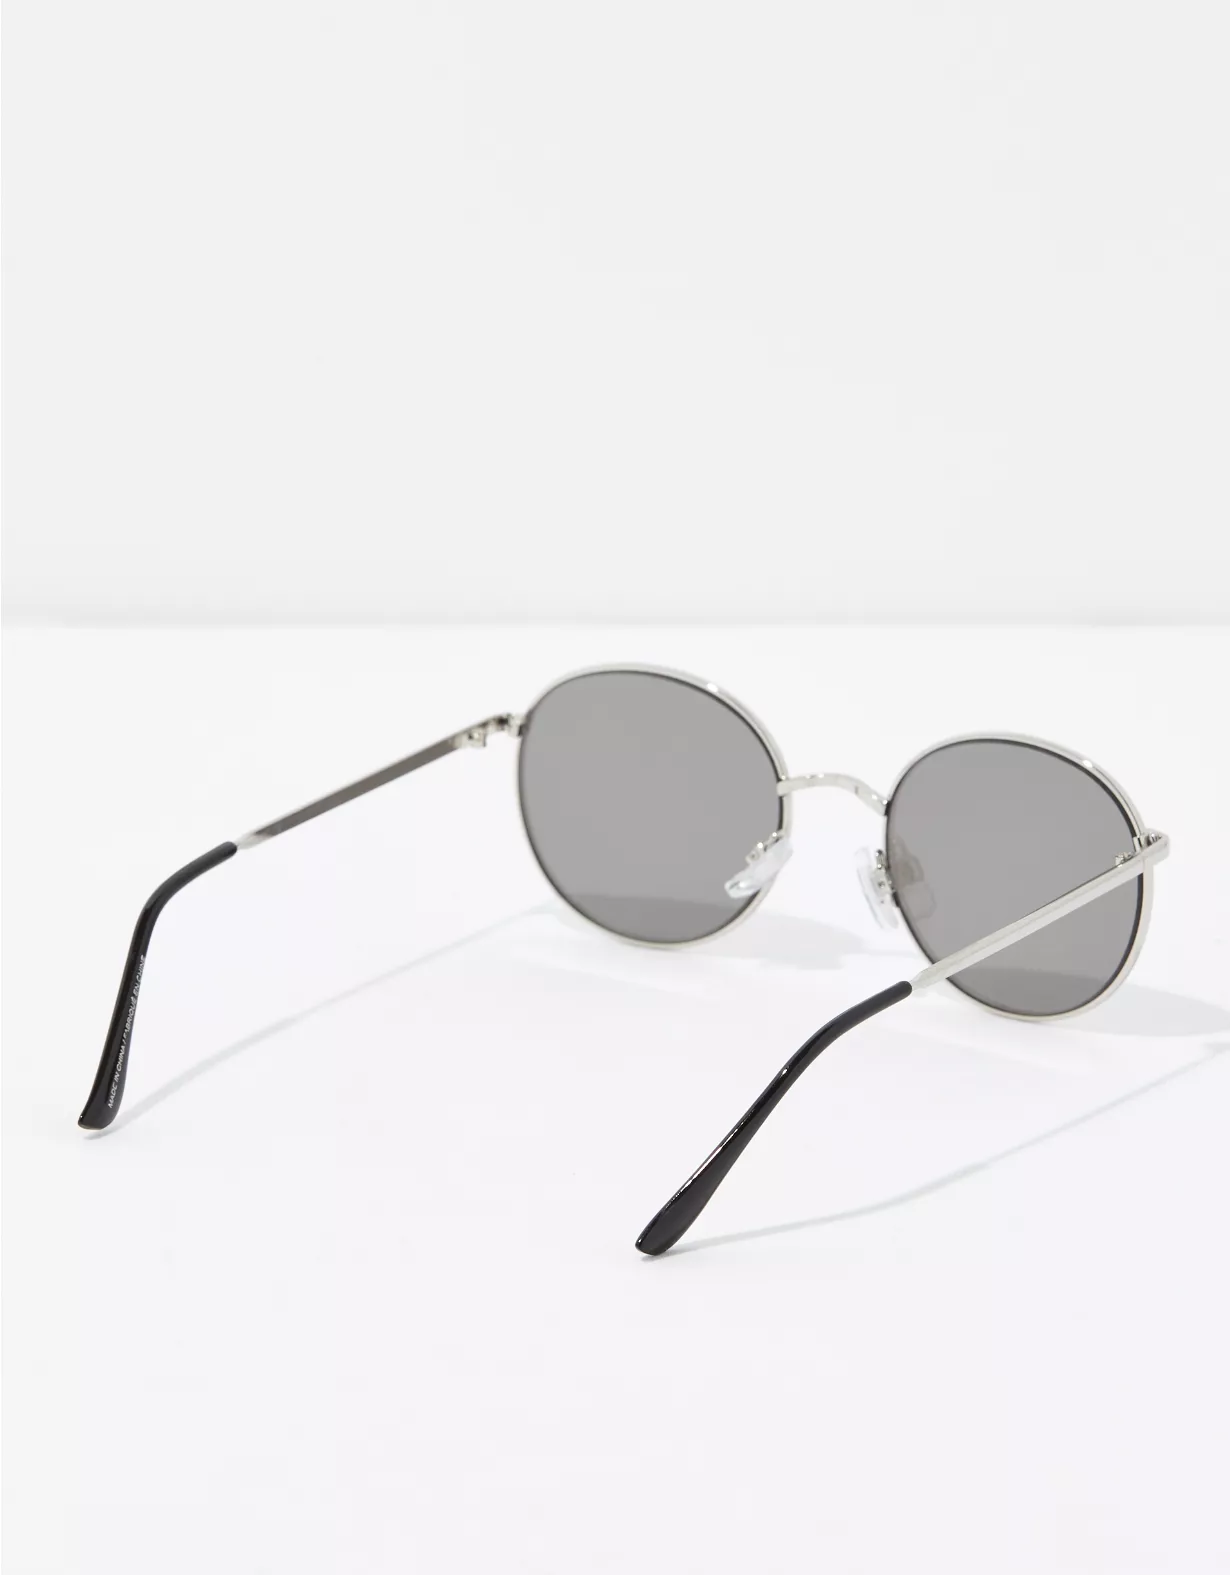 AEO Retro Round Sunglasses